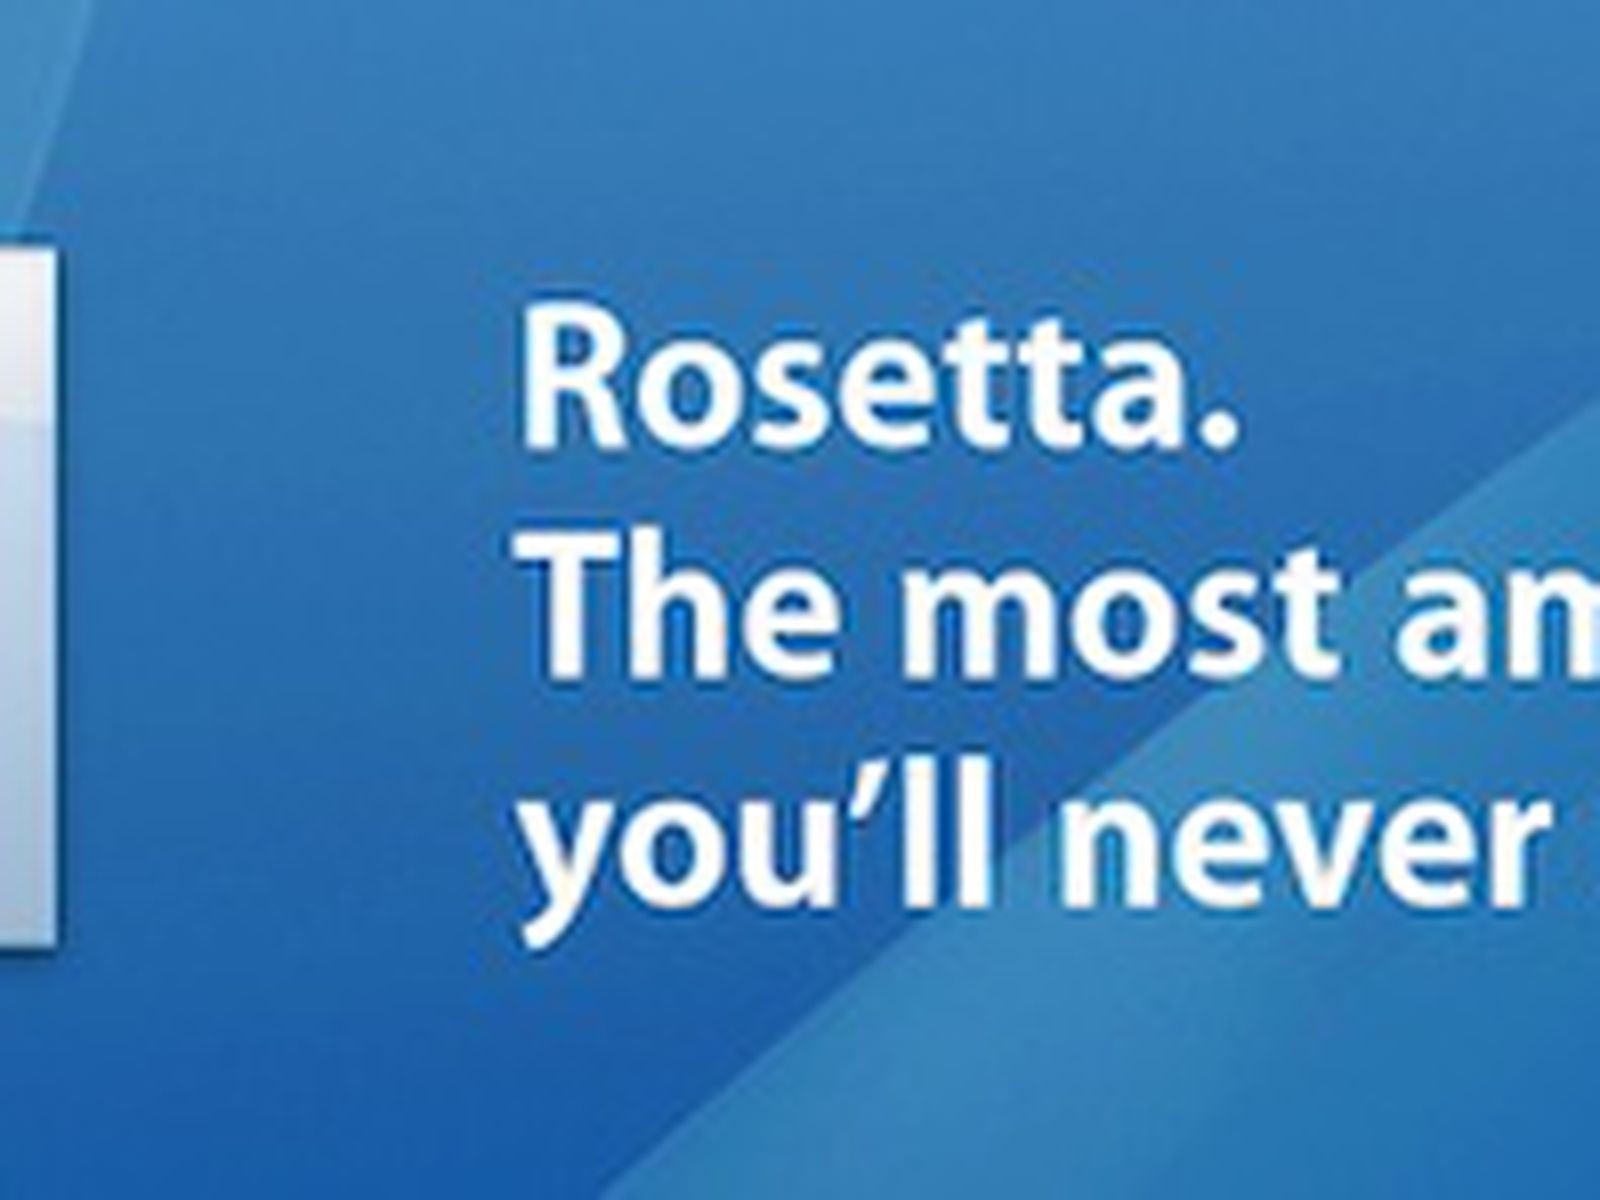 rosetta mac os x lion download